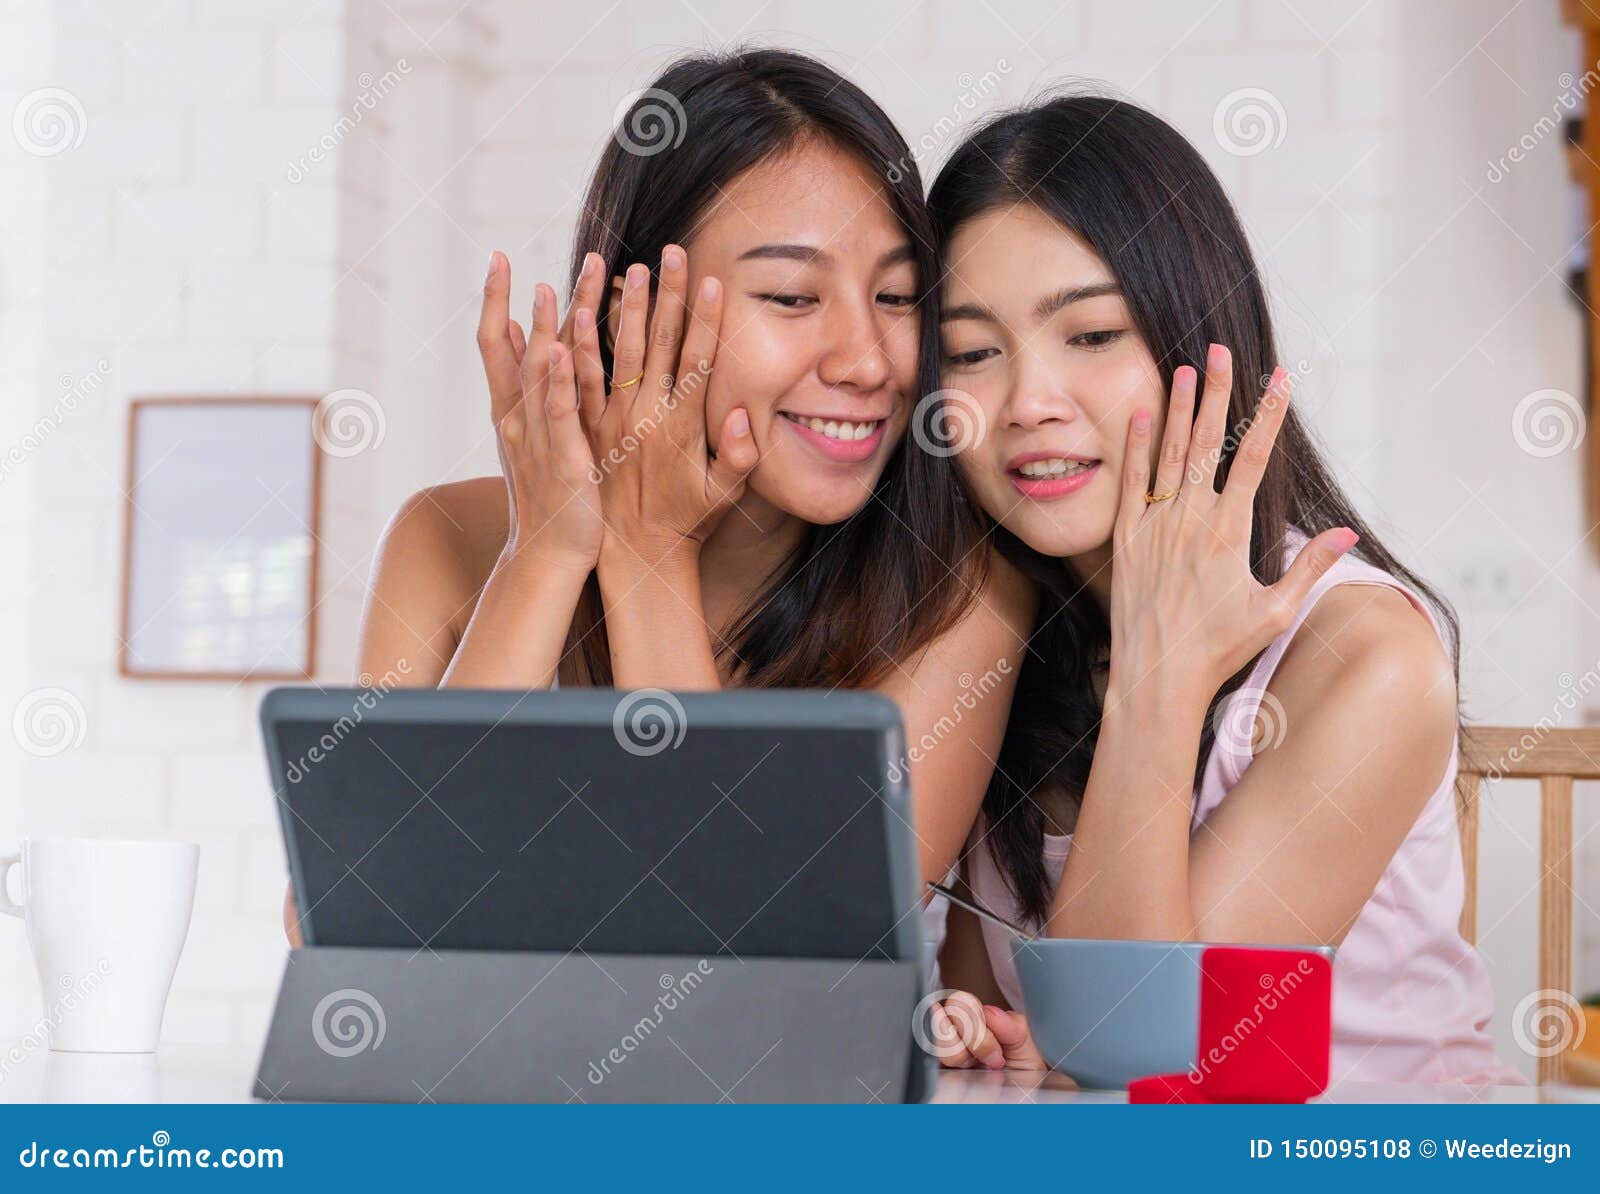 Lesbian Teen Girls Videos